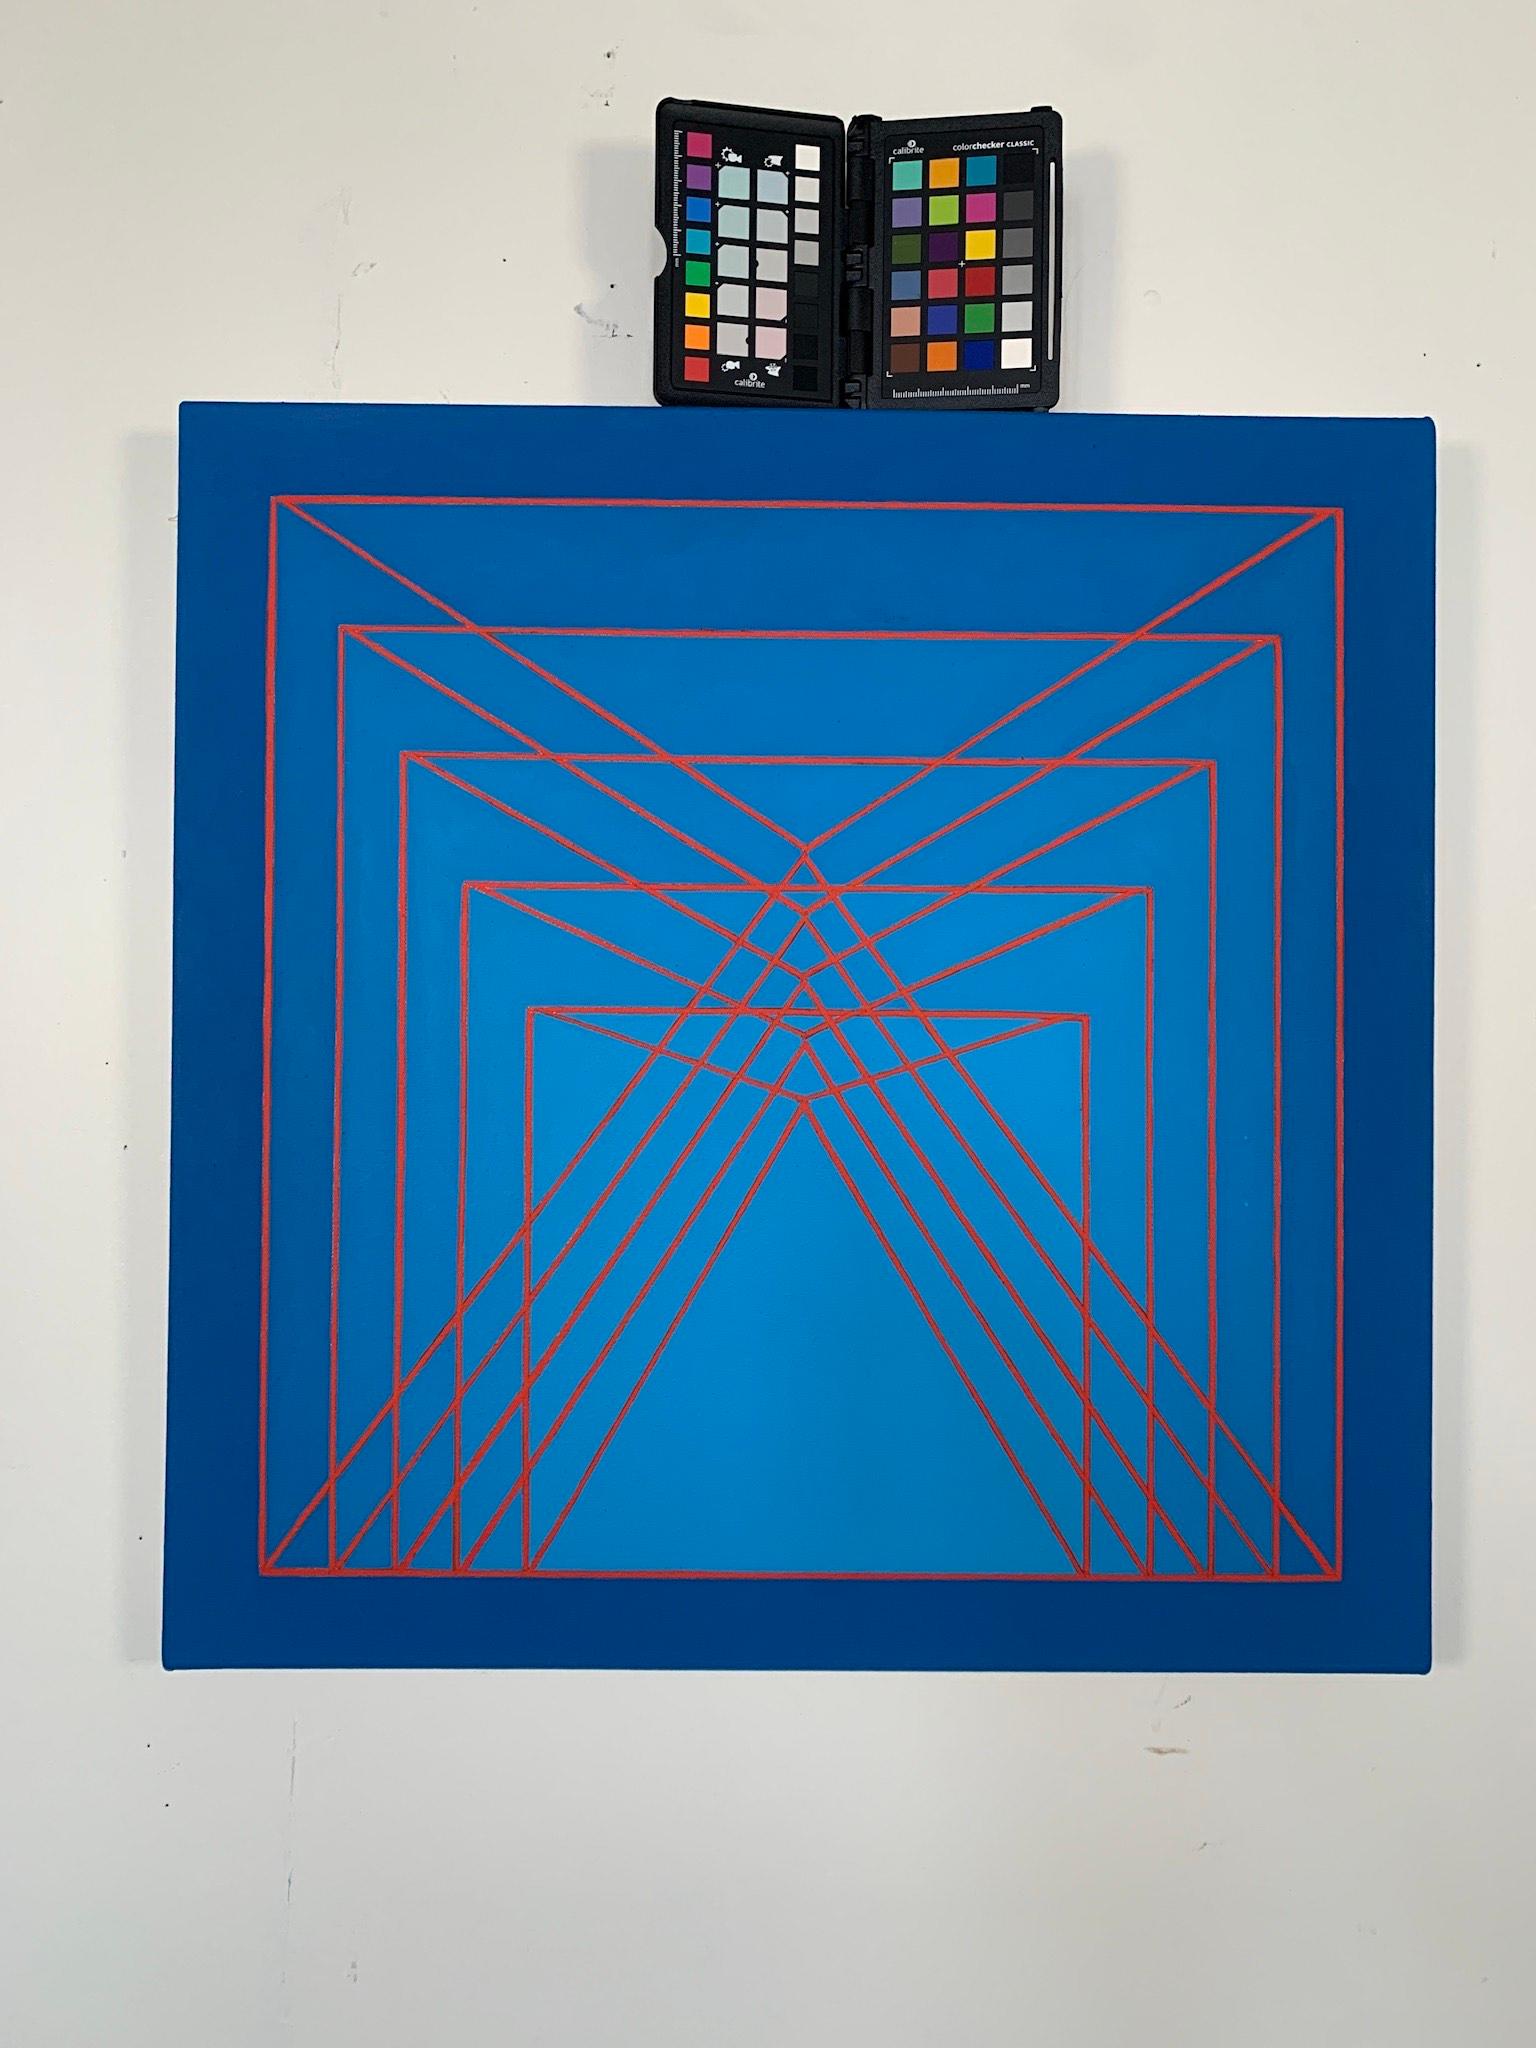 Benjamin Weaver crée une tension spatiale en utilisant des couleurs contrastées disposées dans un cadre géométrique. L'imagerie et la couleur fonctionnent à la fois avec et contre l'autre pour créer un mouvement dans la composition. Grâce au